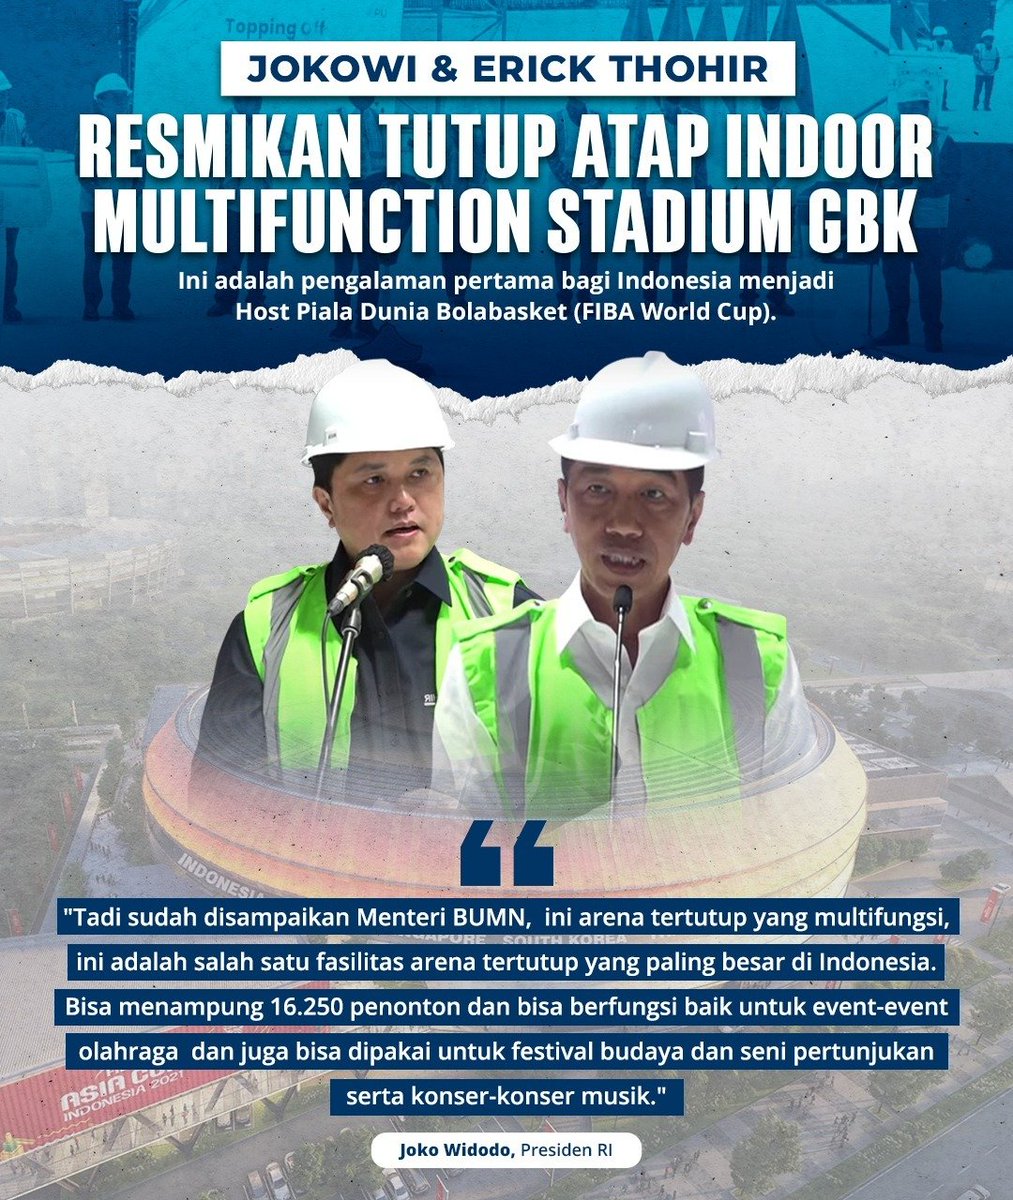 Menteri BUMN Erick Thohir mendampingi presiden Jokowi dalam meresmikan Tutup Atap Indoor Multifunction Stadium GBK. Dan ini adalah pengalaman pertama bagi Indonesia menjadi host Piala Dunia Bolabasket (FIBA World Cup)

@erickthohir 
#BangkitBersamaET